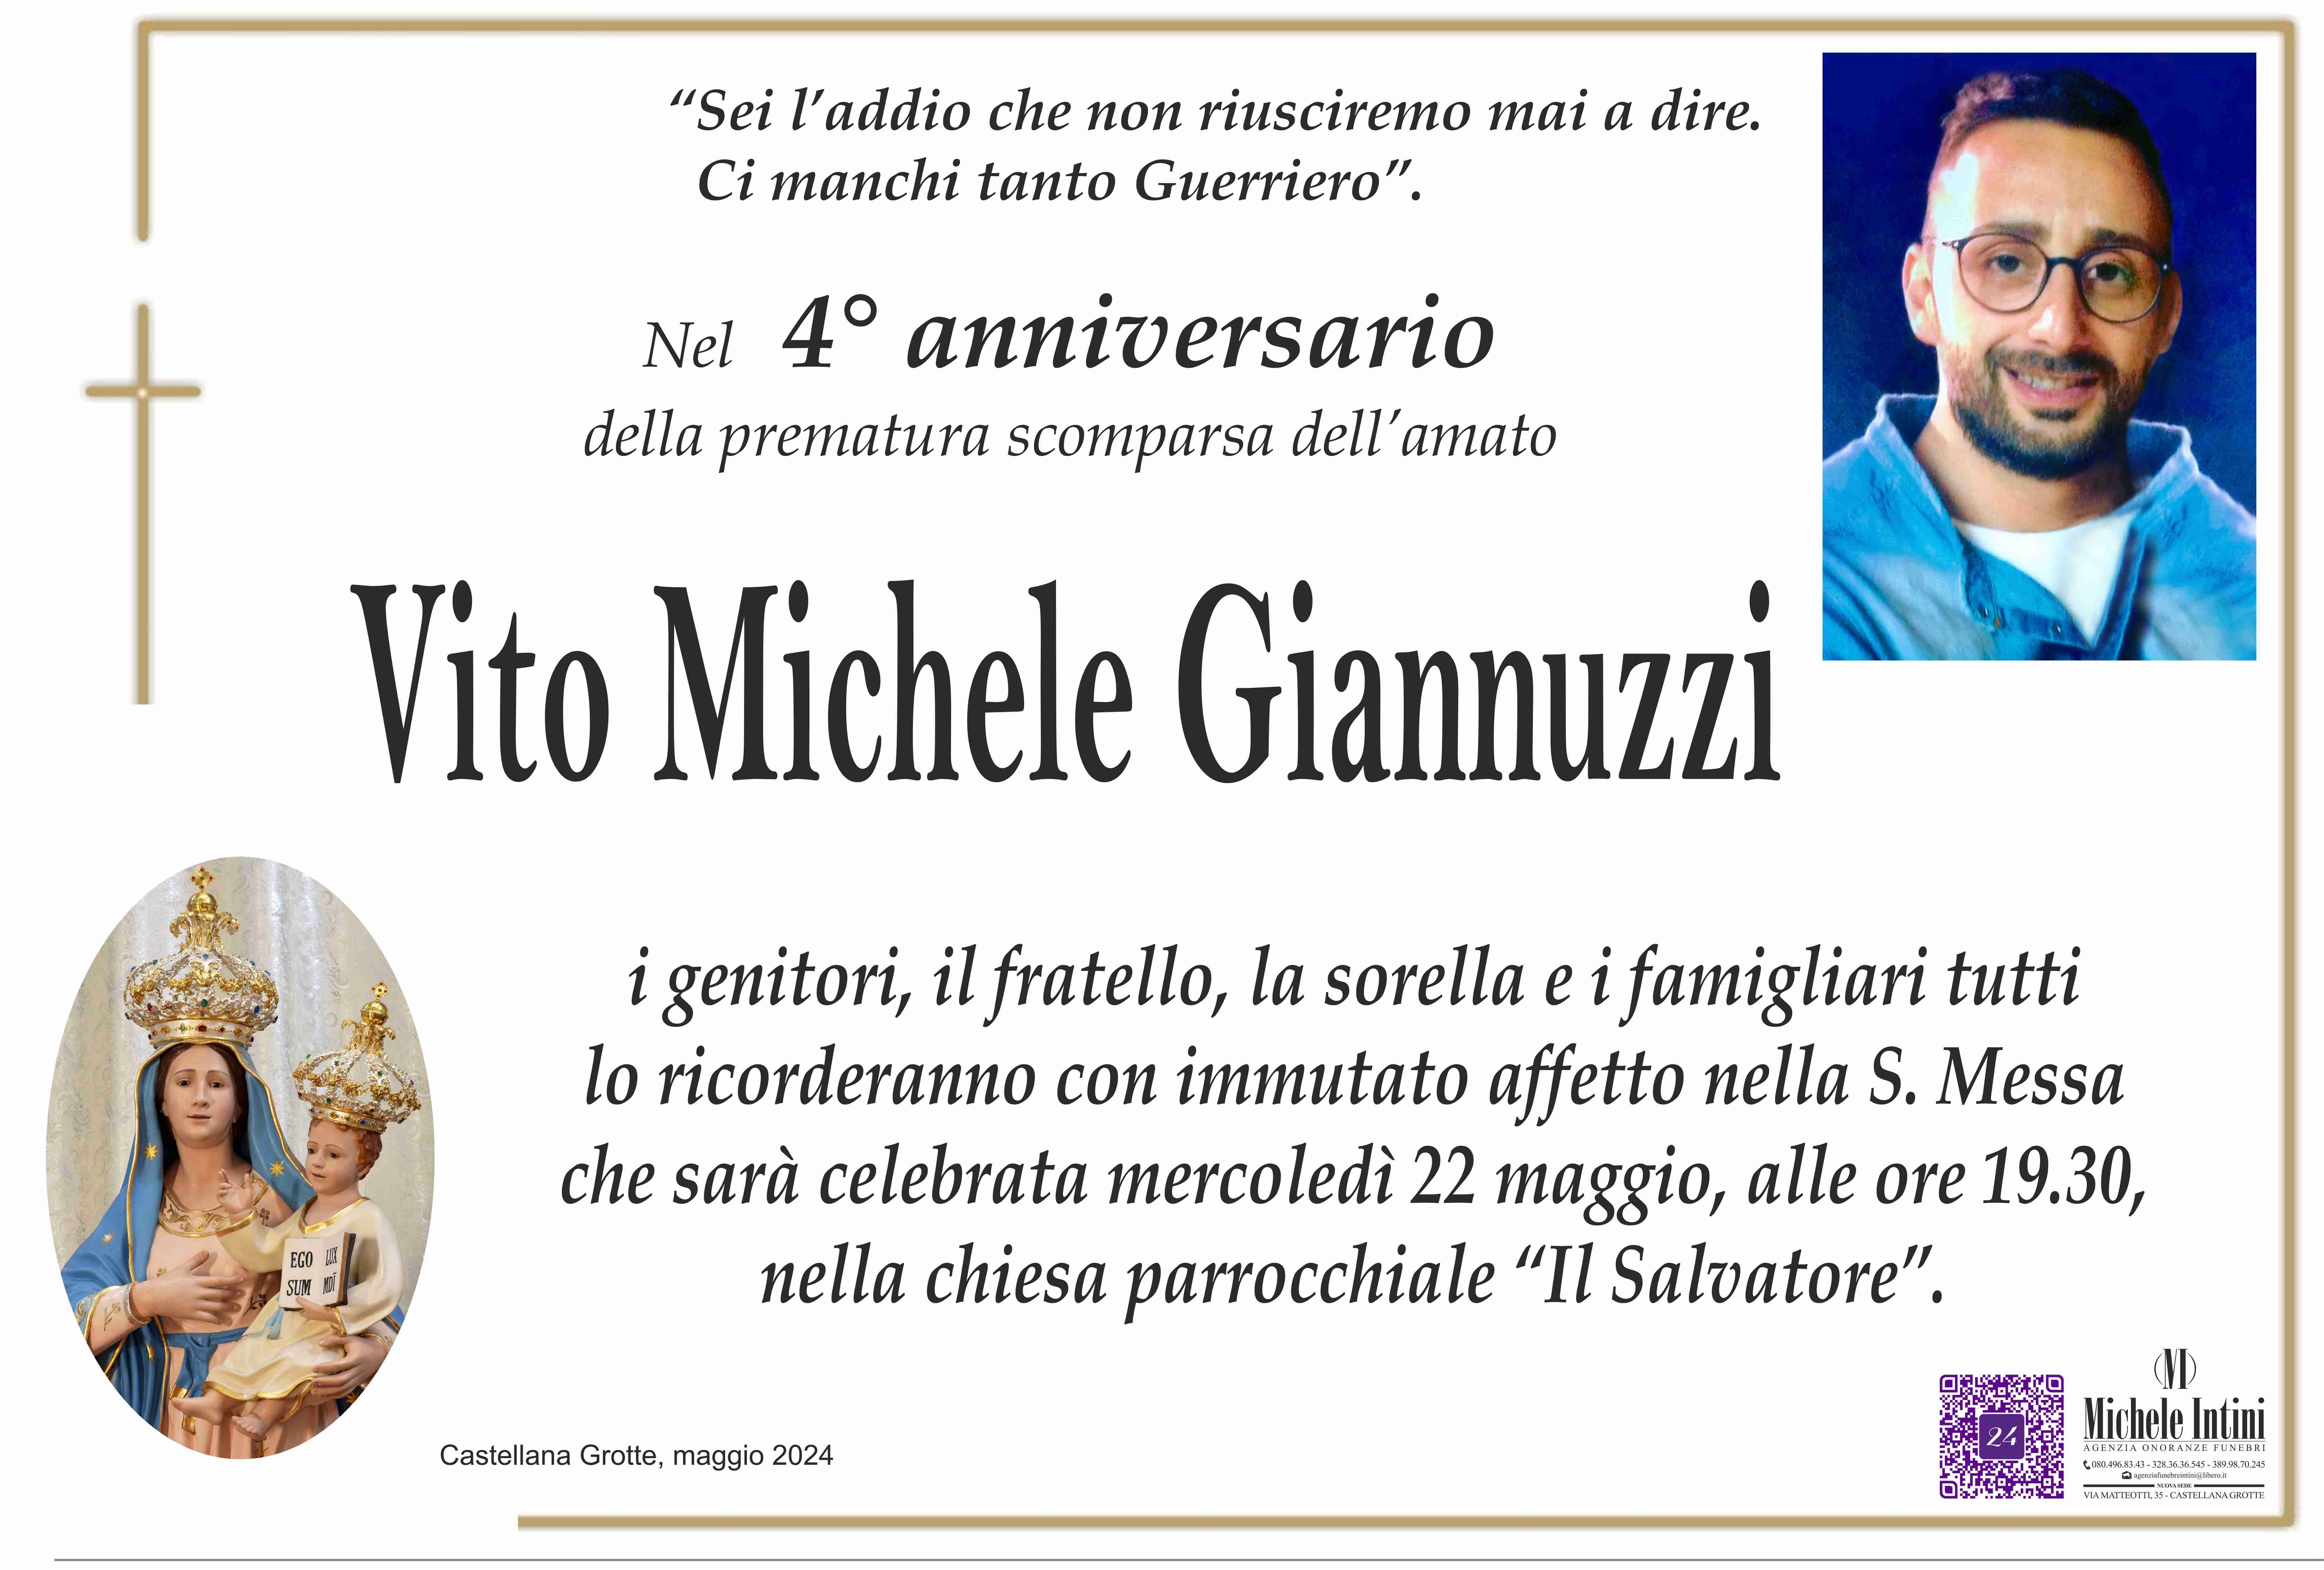 Vito Michele Giannuzzi